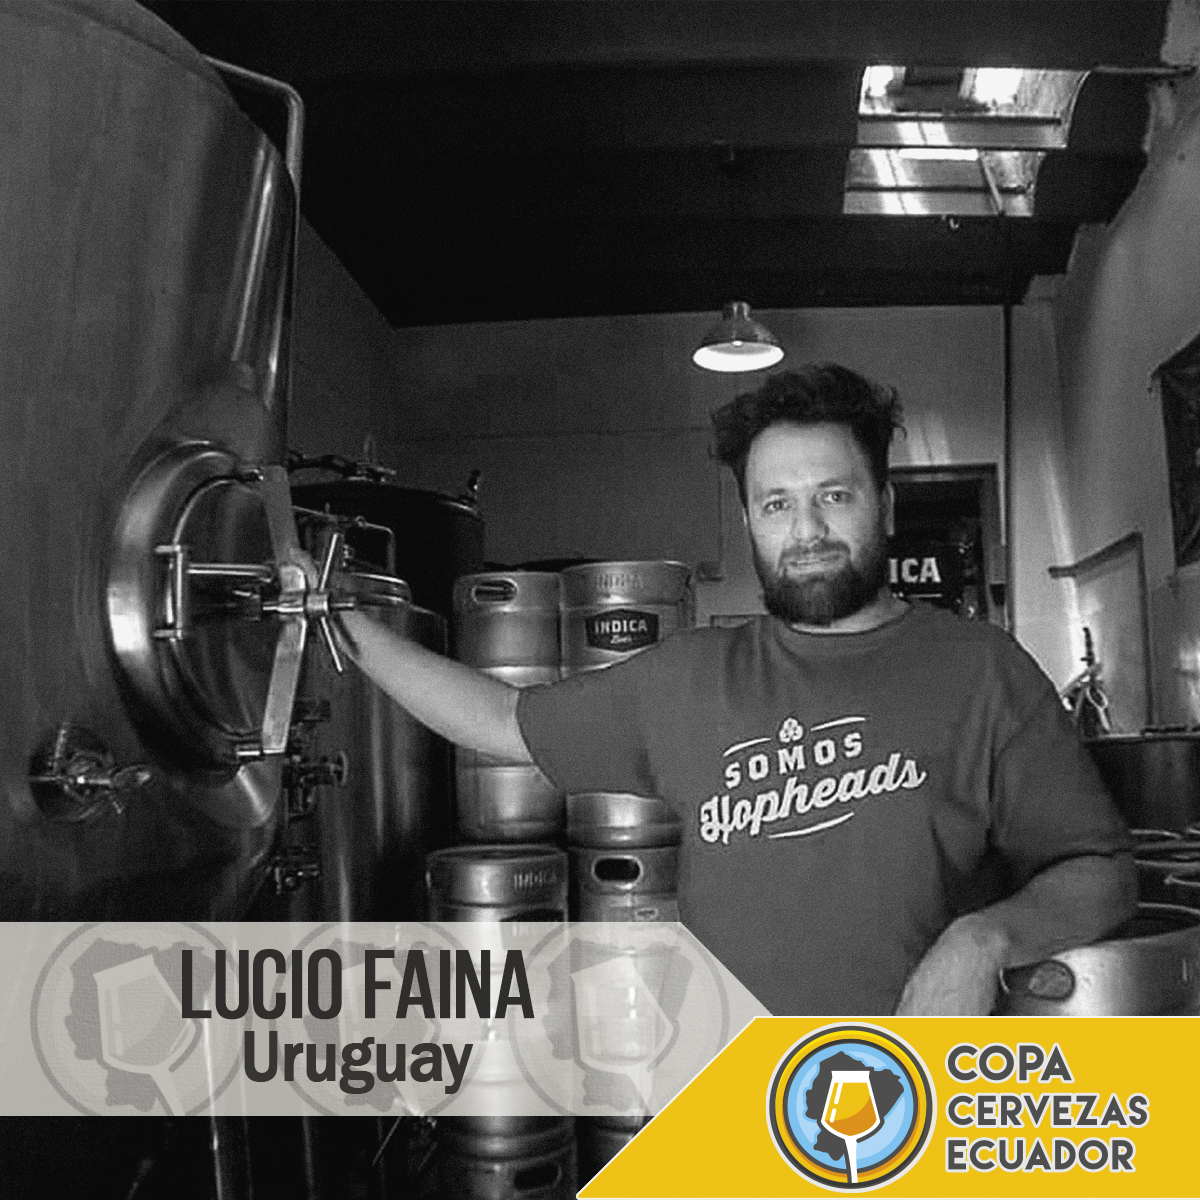 Lucio Faina. Uruguay